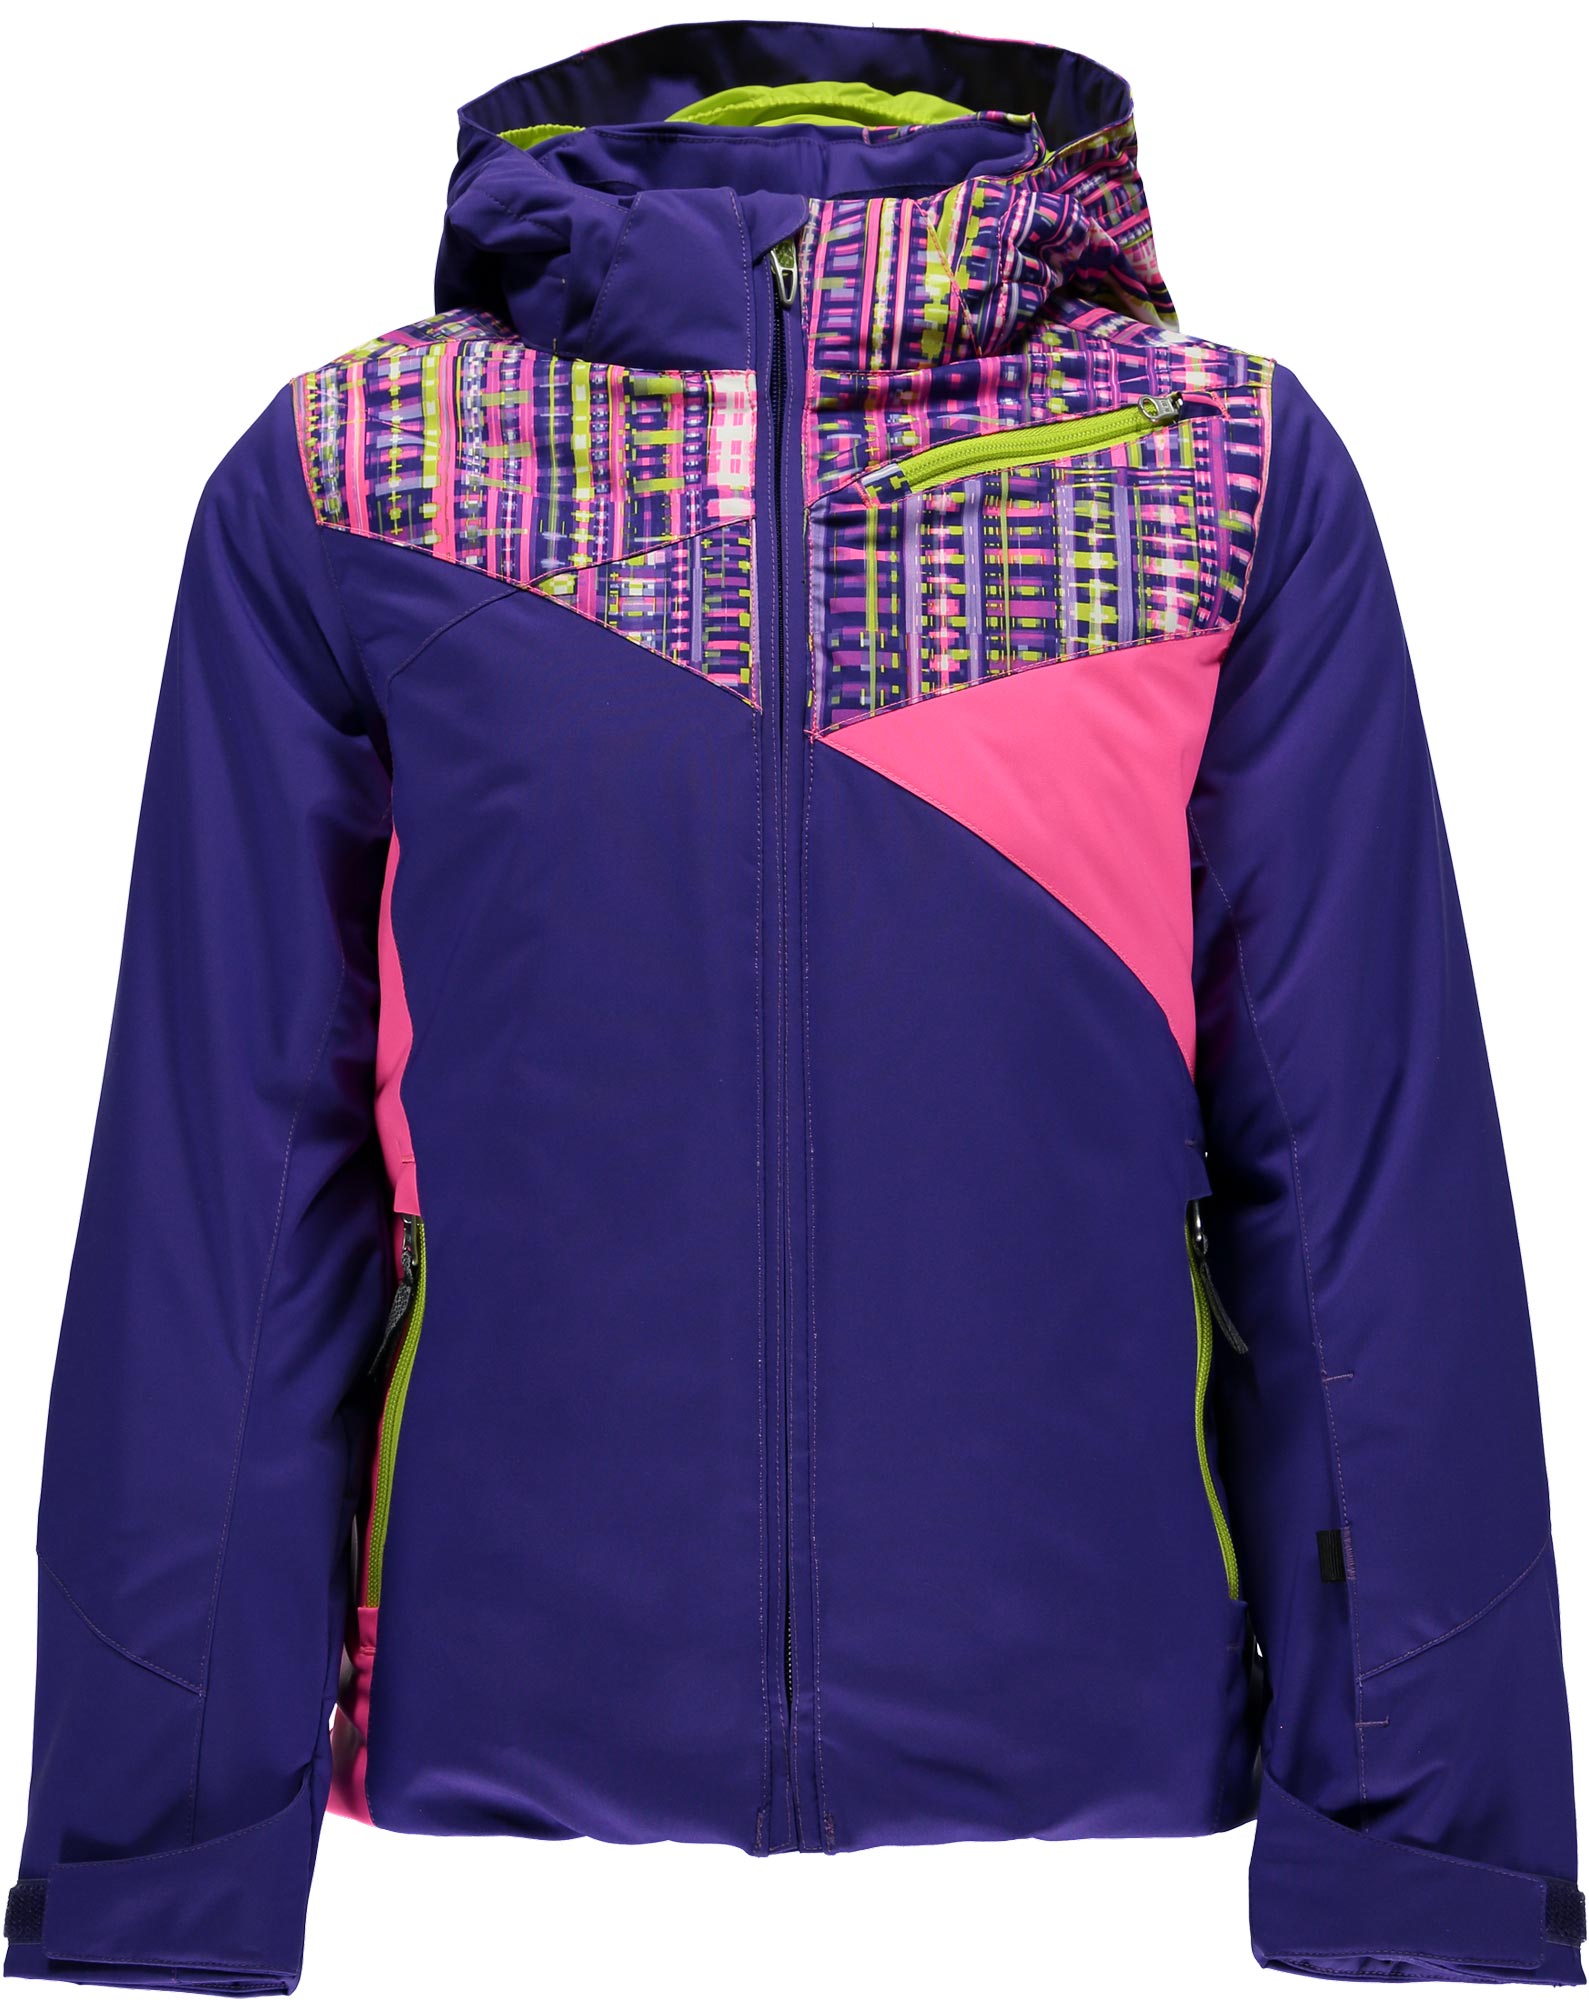 Girls’ skiing jacket